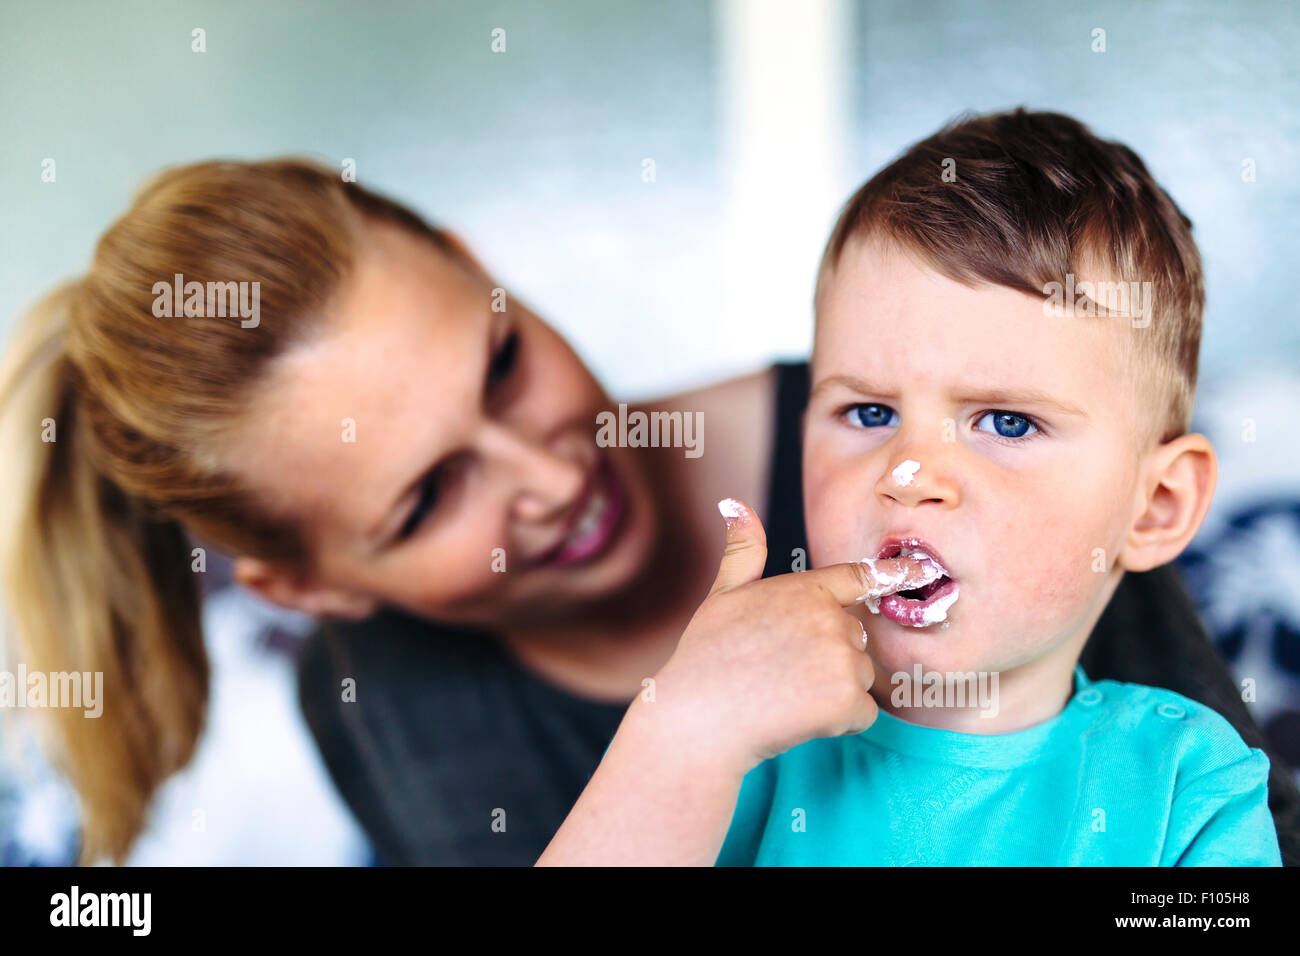 La madre e il bambino a mangiare una torta / deserto con le dita e divertendosi Foto Stock